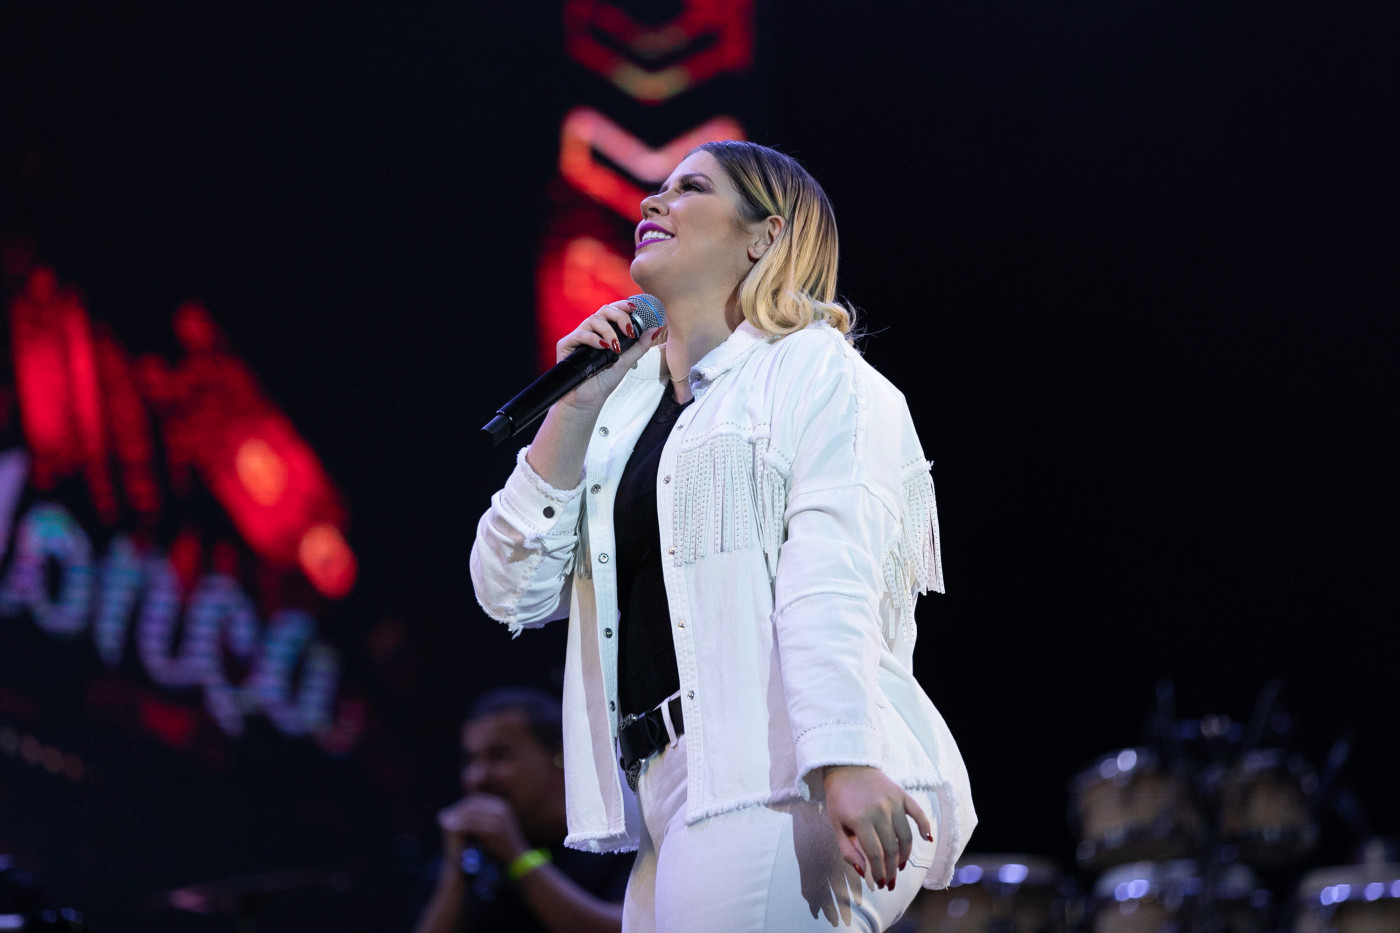 A cantora Marília Mendonça olhando para o alto enquanto canta em show no Rio de Janeiro